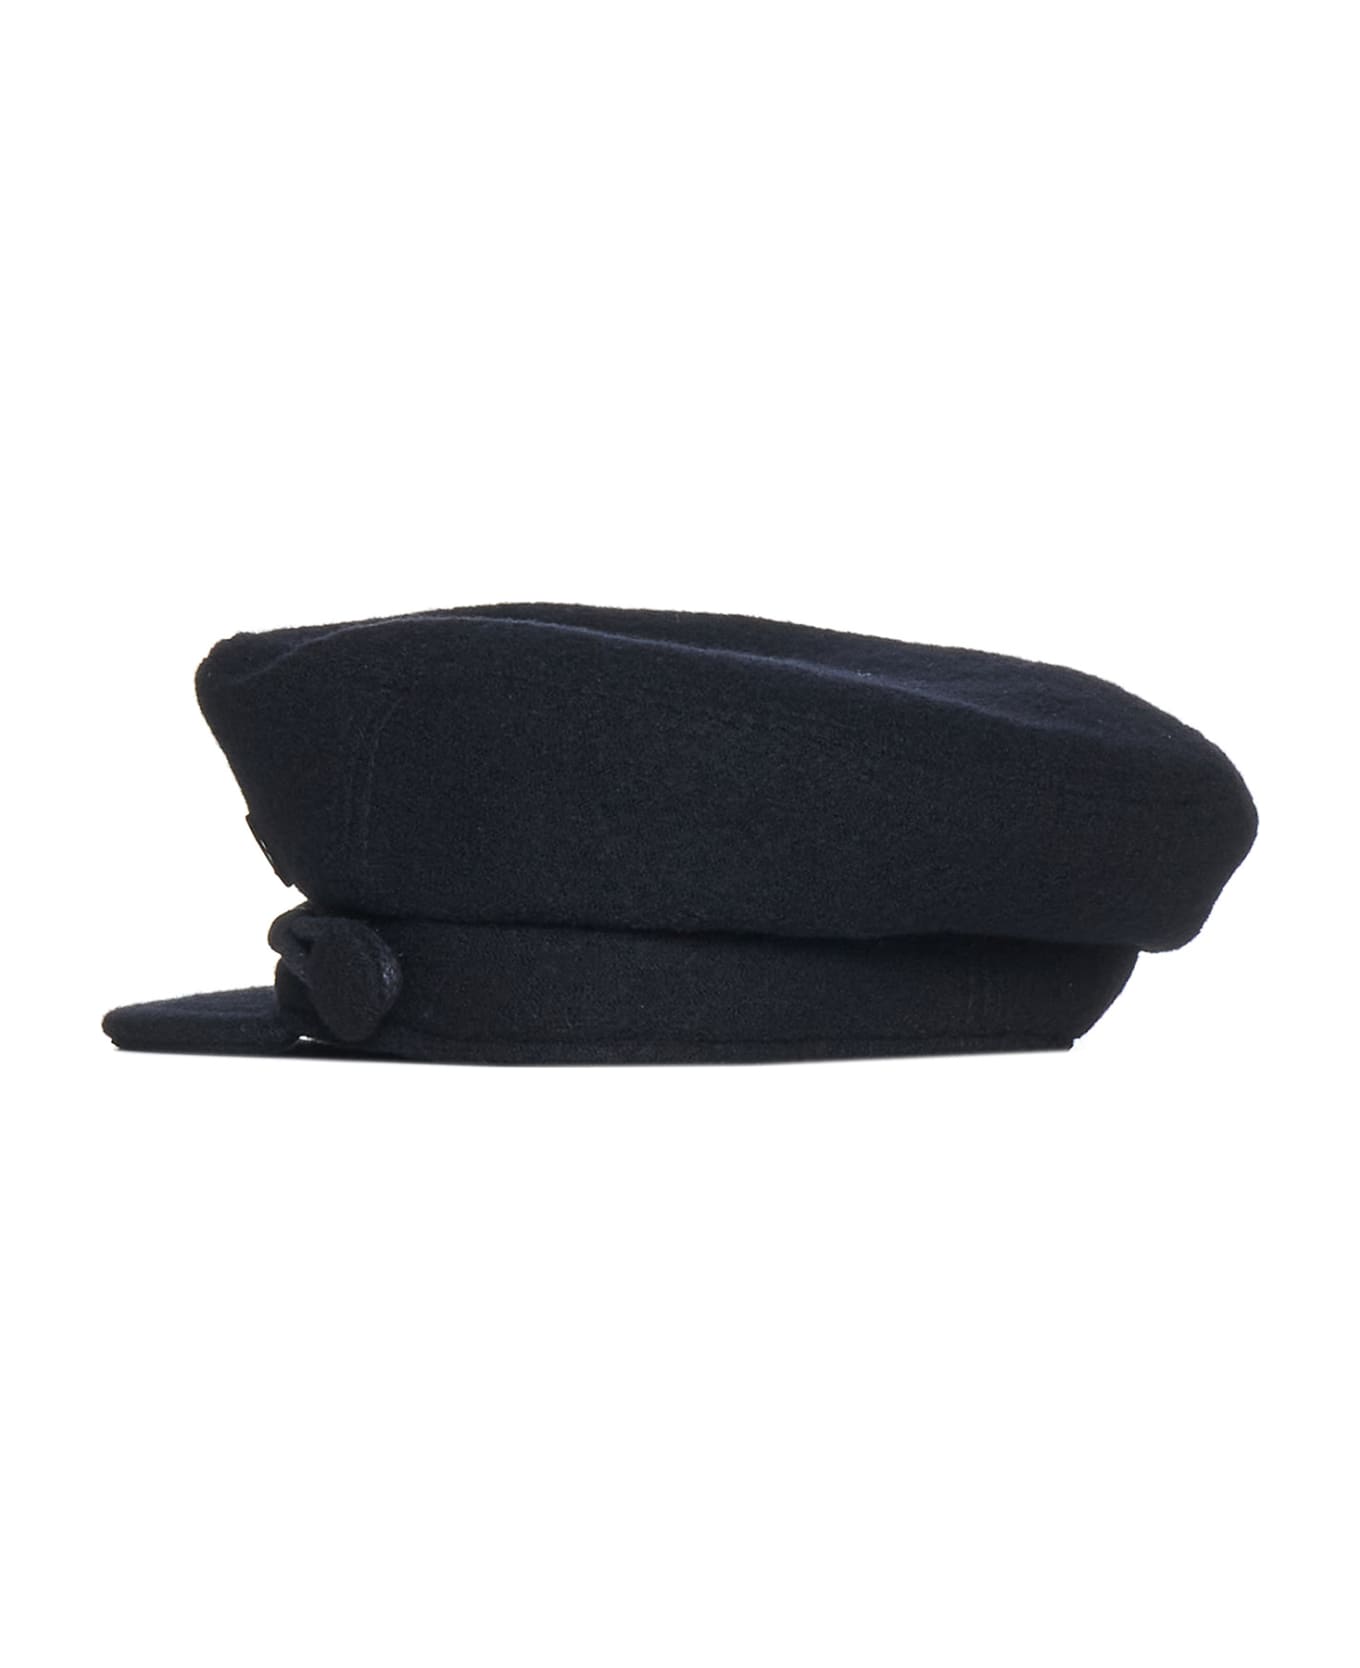 Maison Michel Hat - Black